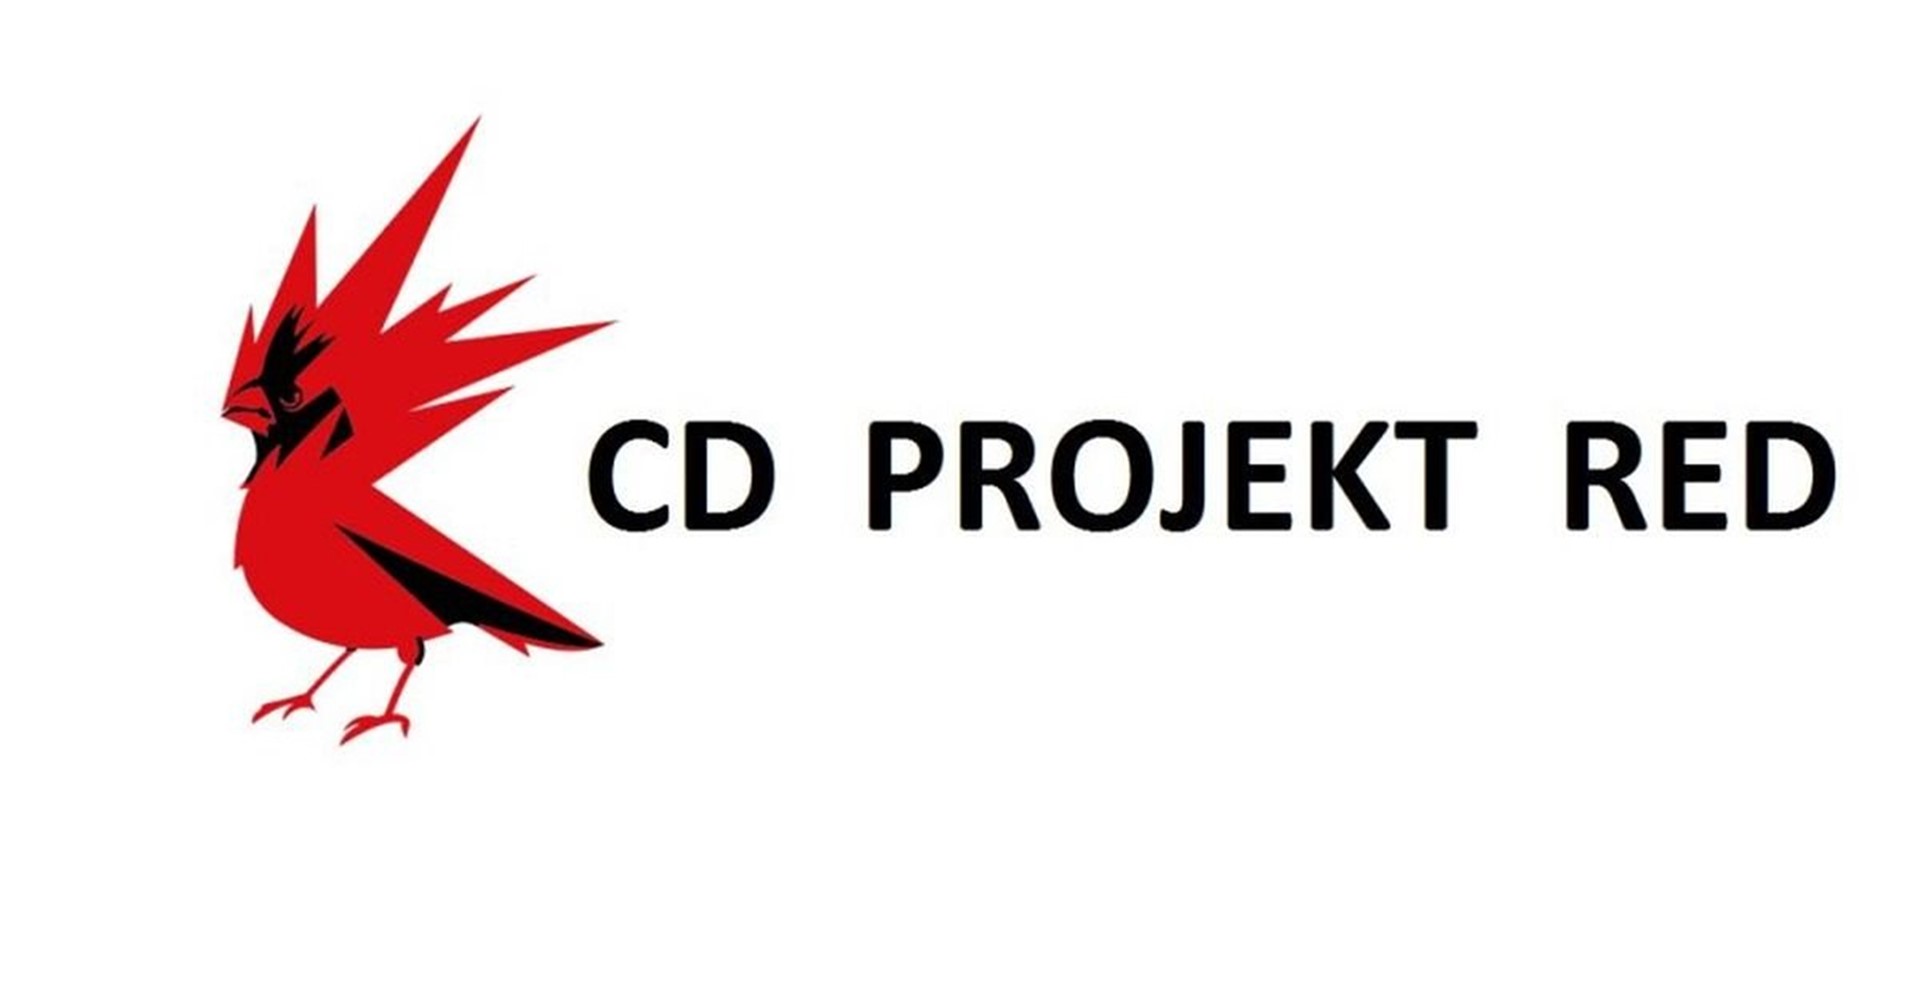 ไม่ได้มีไว้ขาย ค่าย CD Projekt ออกมาปฏิเสธข่าว Sony สนใจเข้าซื้อ